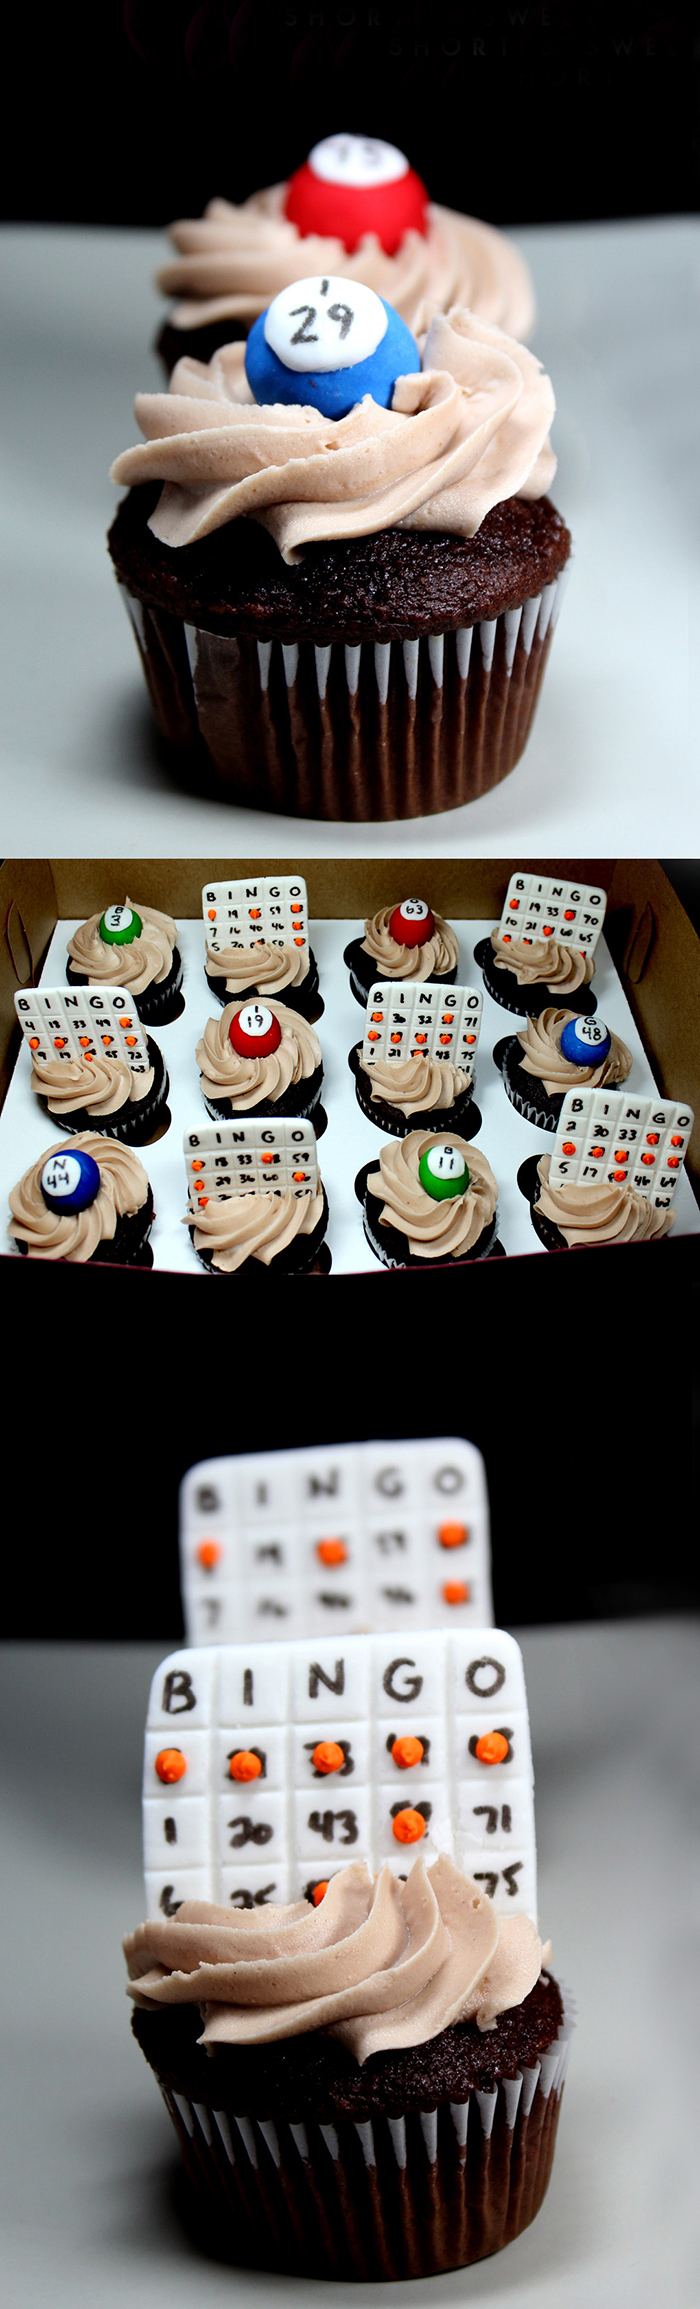 Adorable Bingo cupcakes!